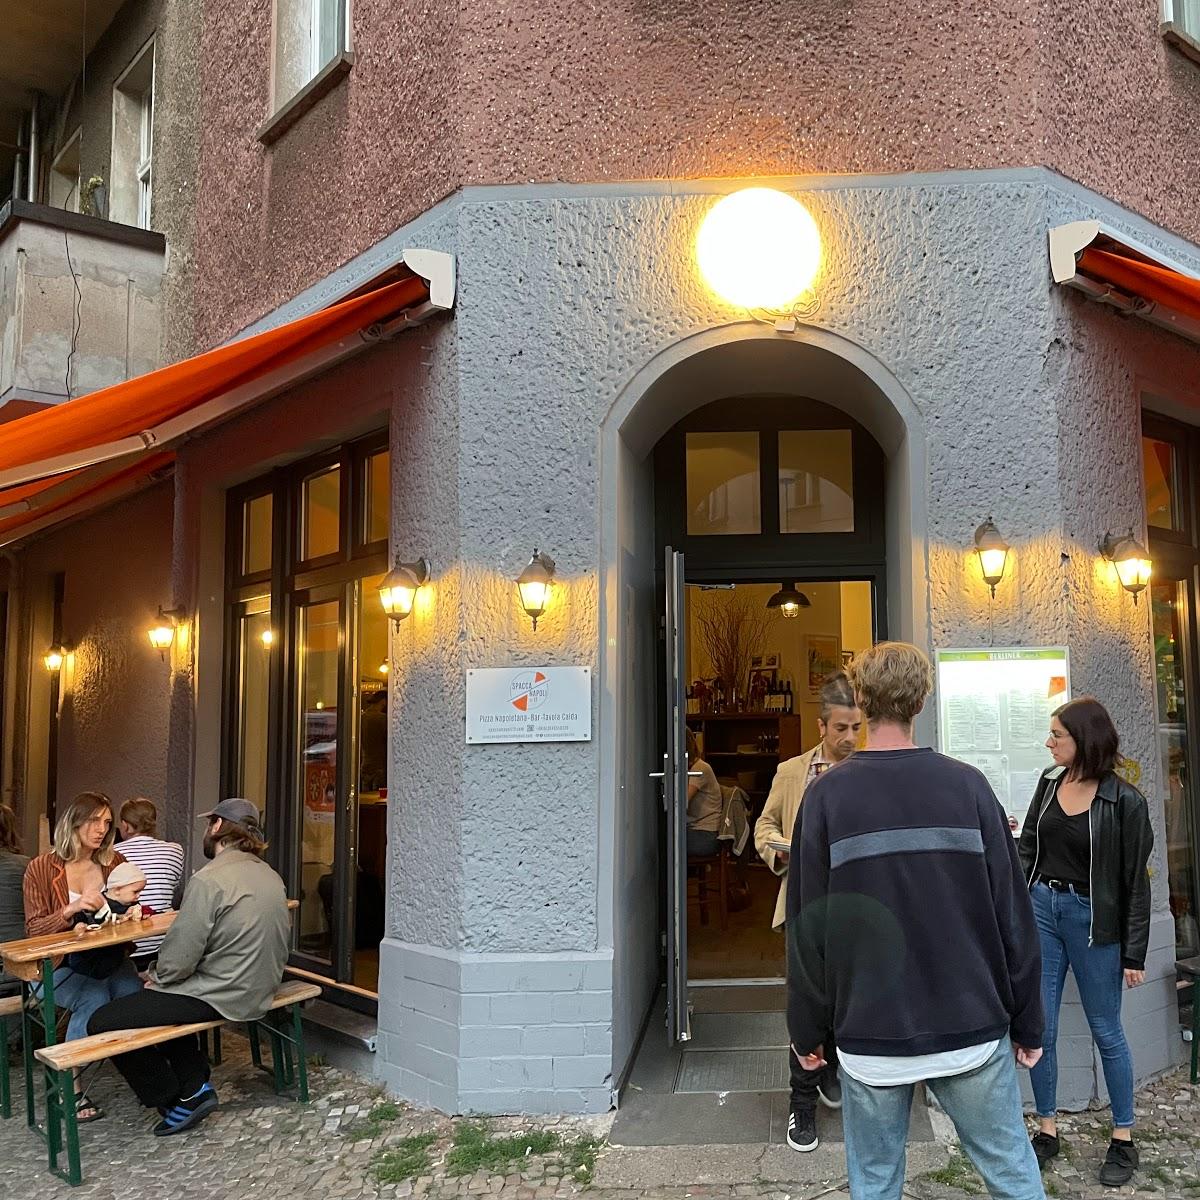 Restaurant "Spaccanapoli Nr. 12" in Berlin